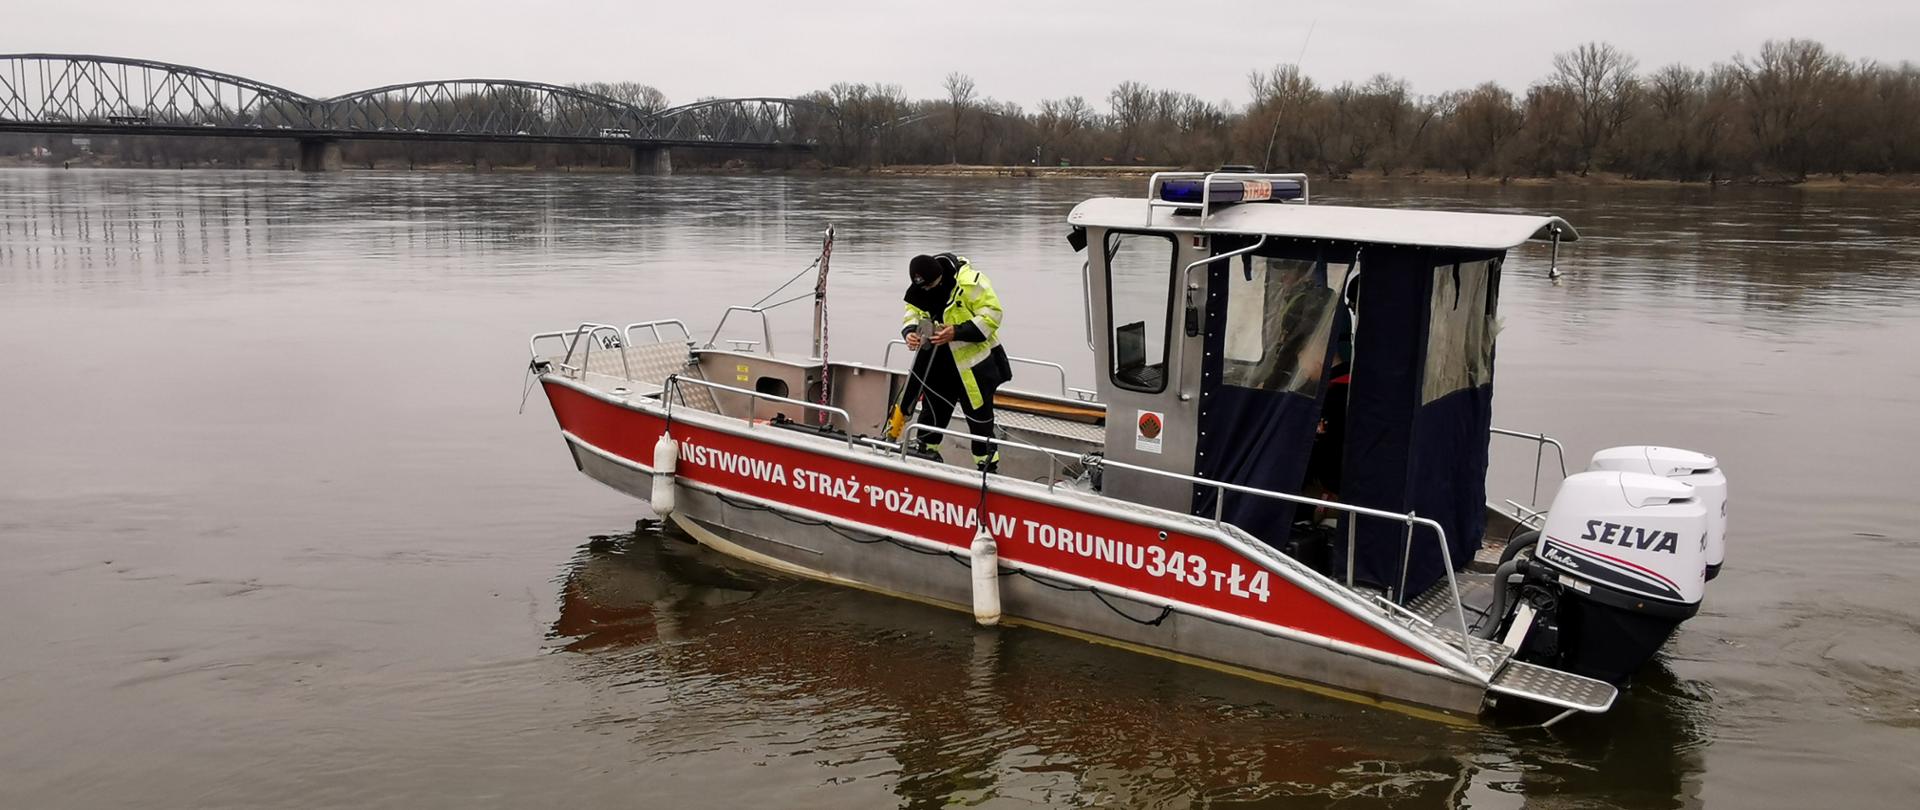 Strażak znajdujący się na łodzi przygotowuje sonar do uruchomienia. Łódź znajduje się na rzece Wiśle. W tle widać most. 